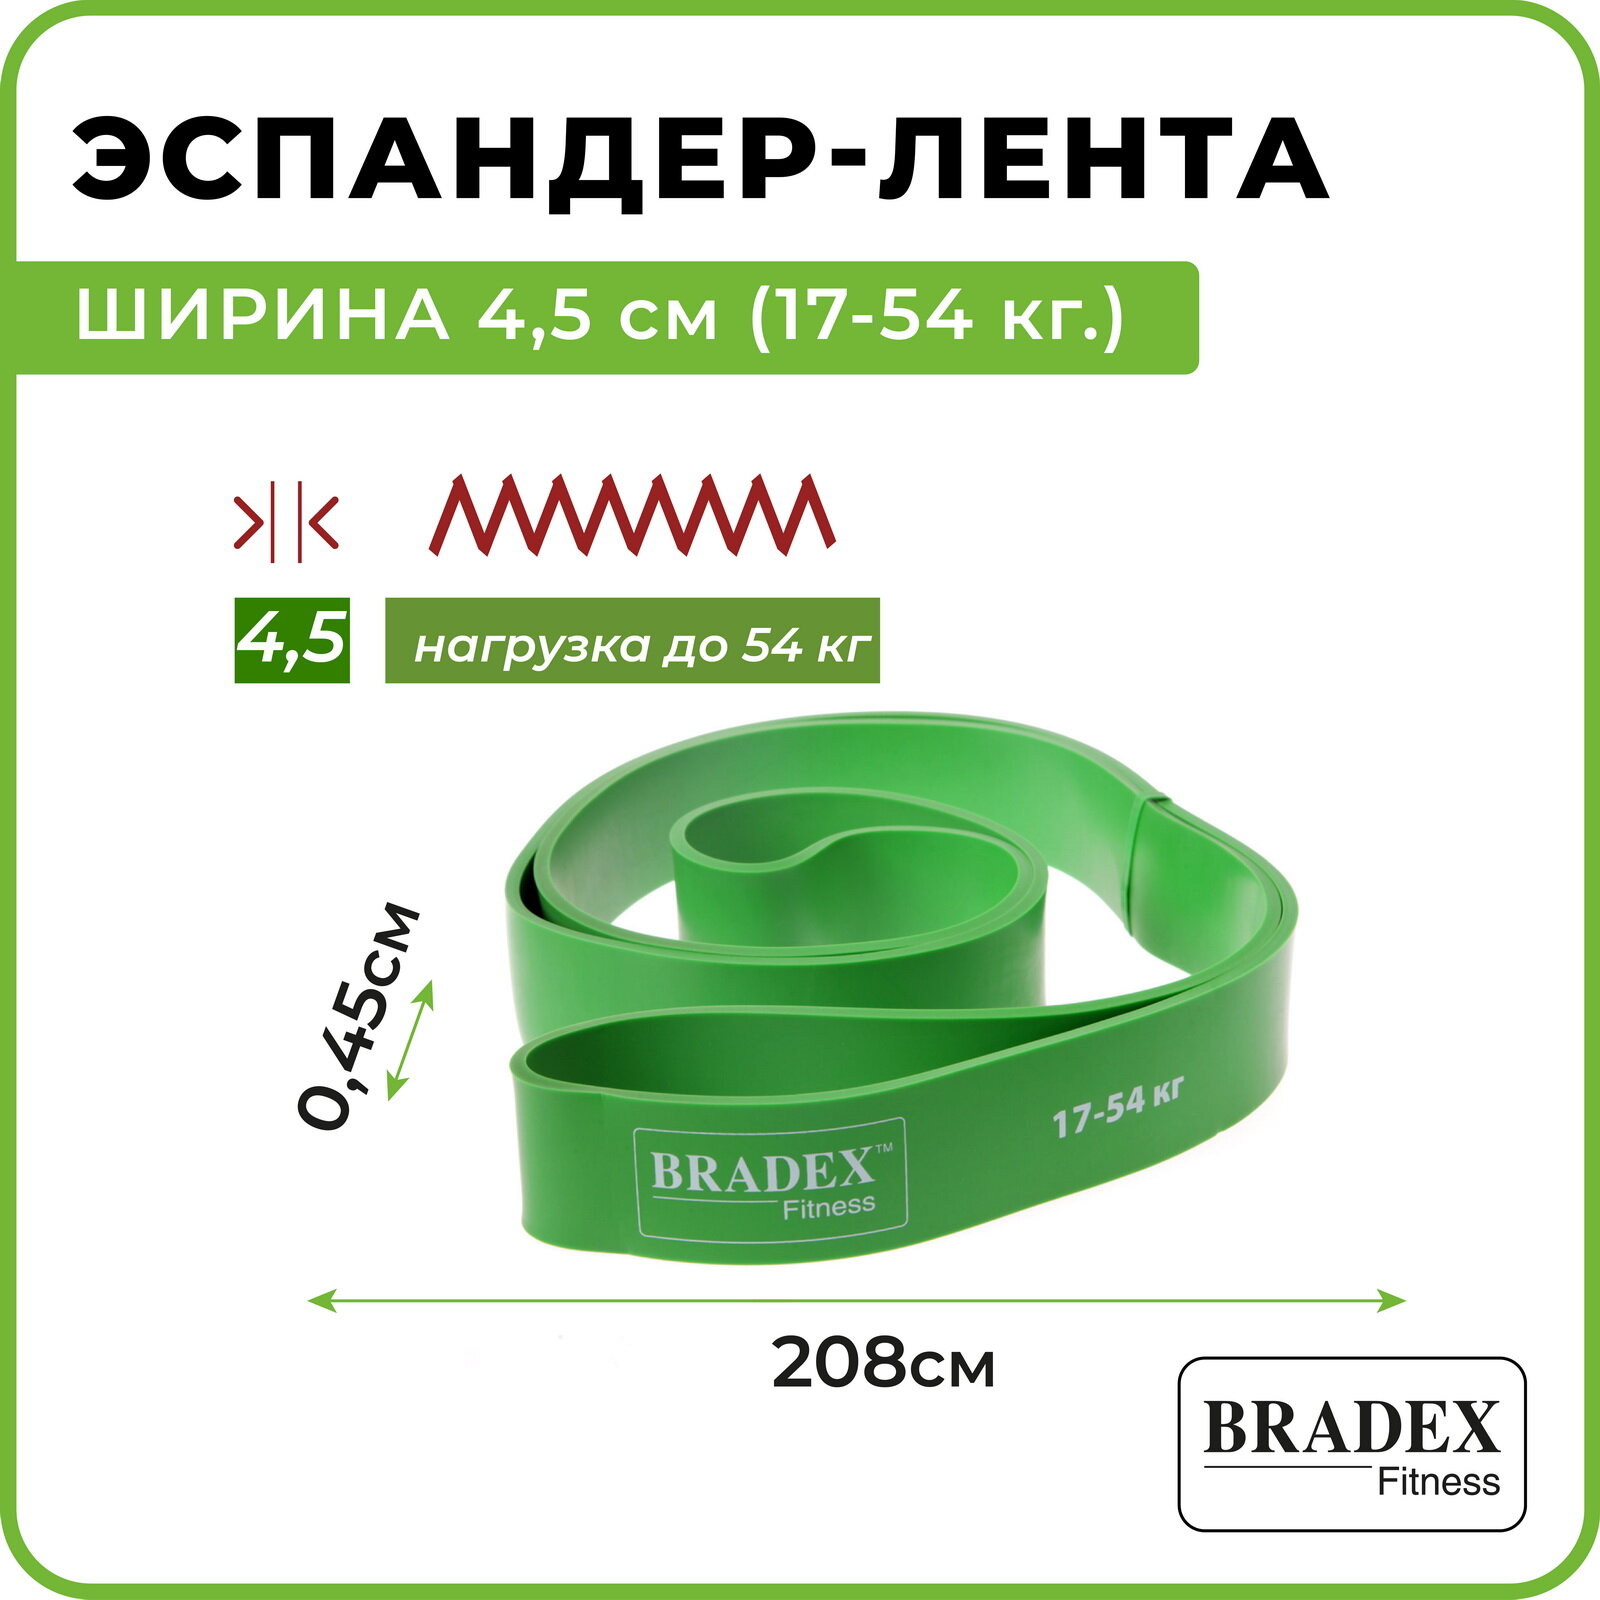 Эспандер-лента Bradex, ширина 4,5 см (17-54 кг.), - фото №2